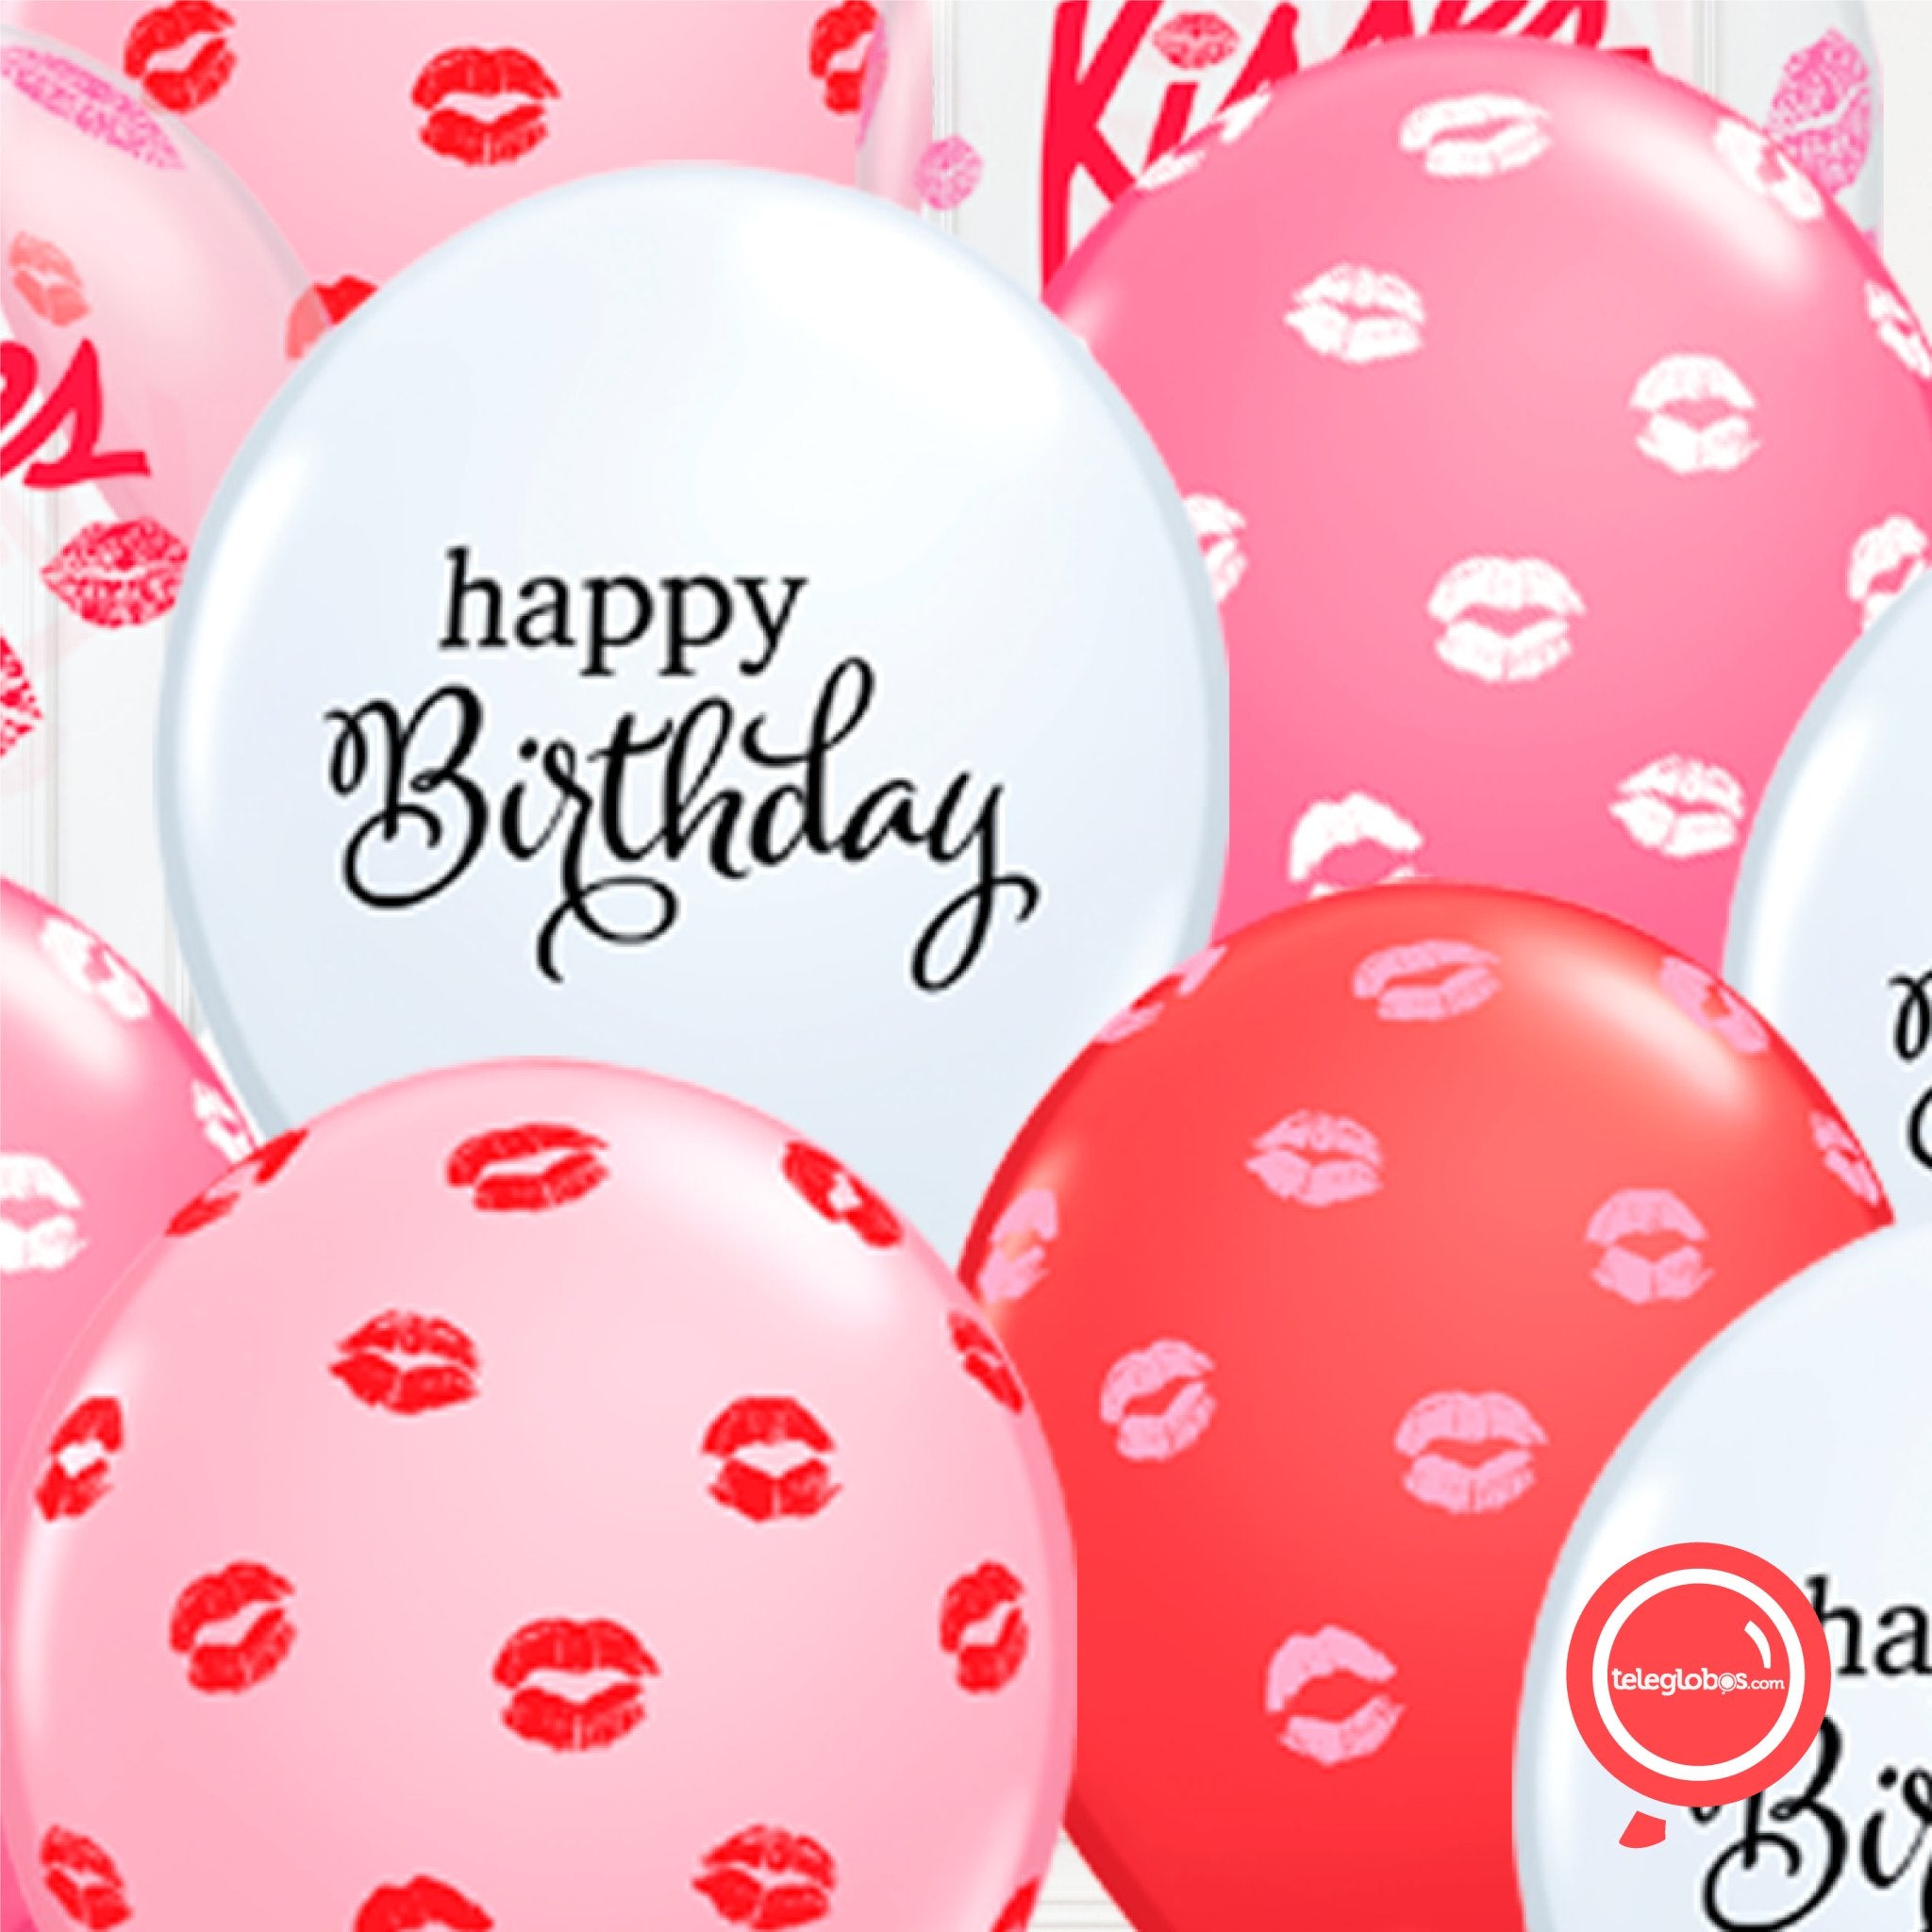 14 globos inflados con helio -Happy Birthday/Kisses- Bio* -RAC016- | Globos y Regalos Teleglobos.com.mx.